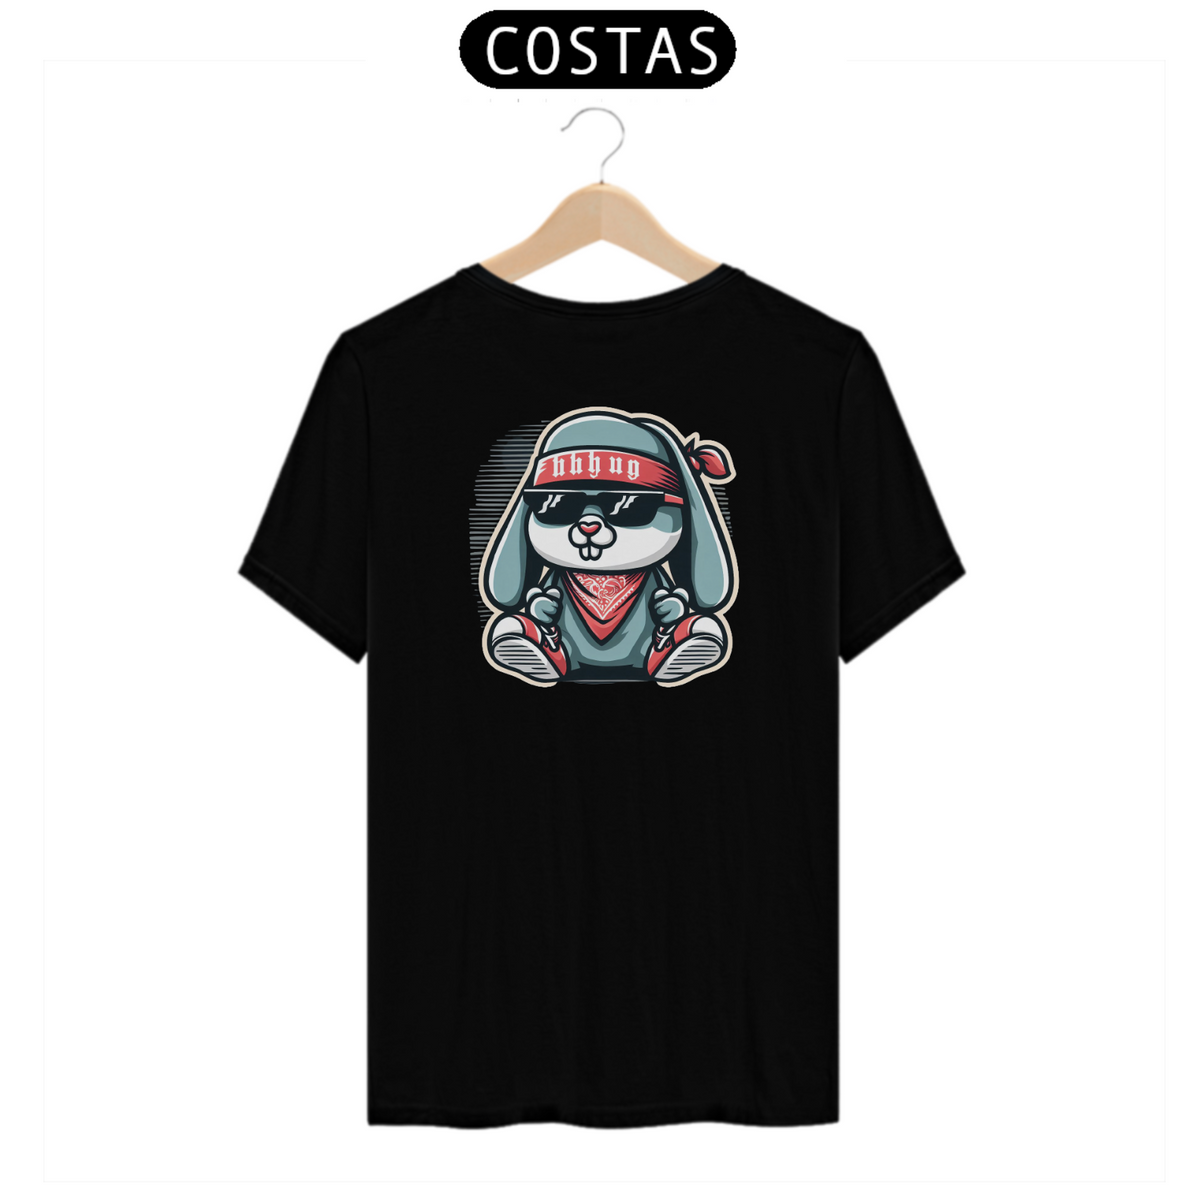 Nome do produto: Camiseta Coelho (Costas)